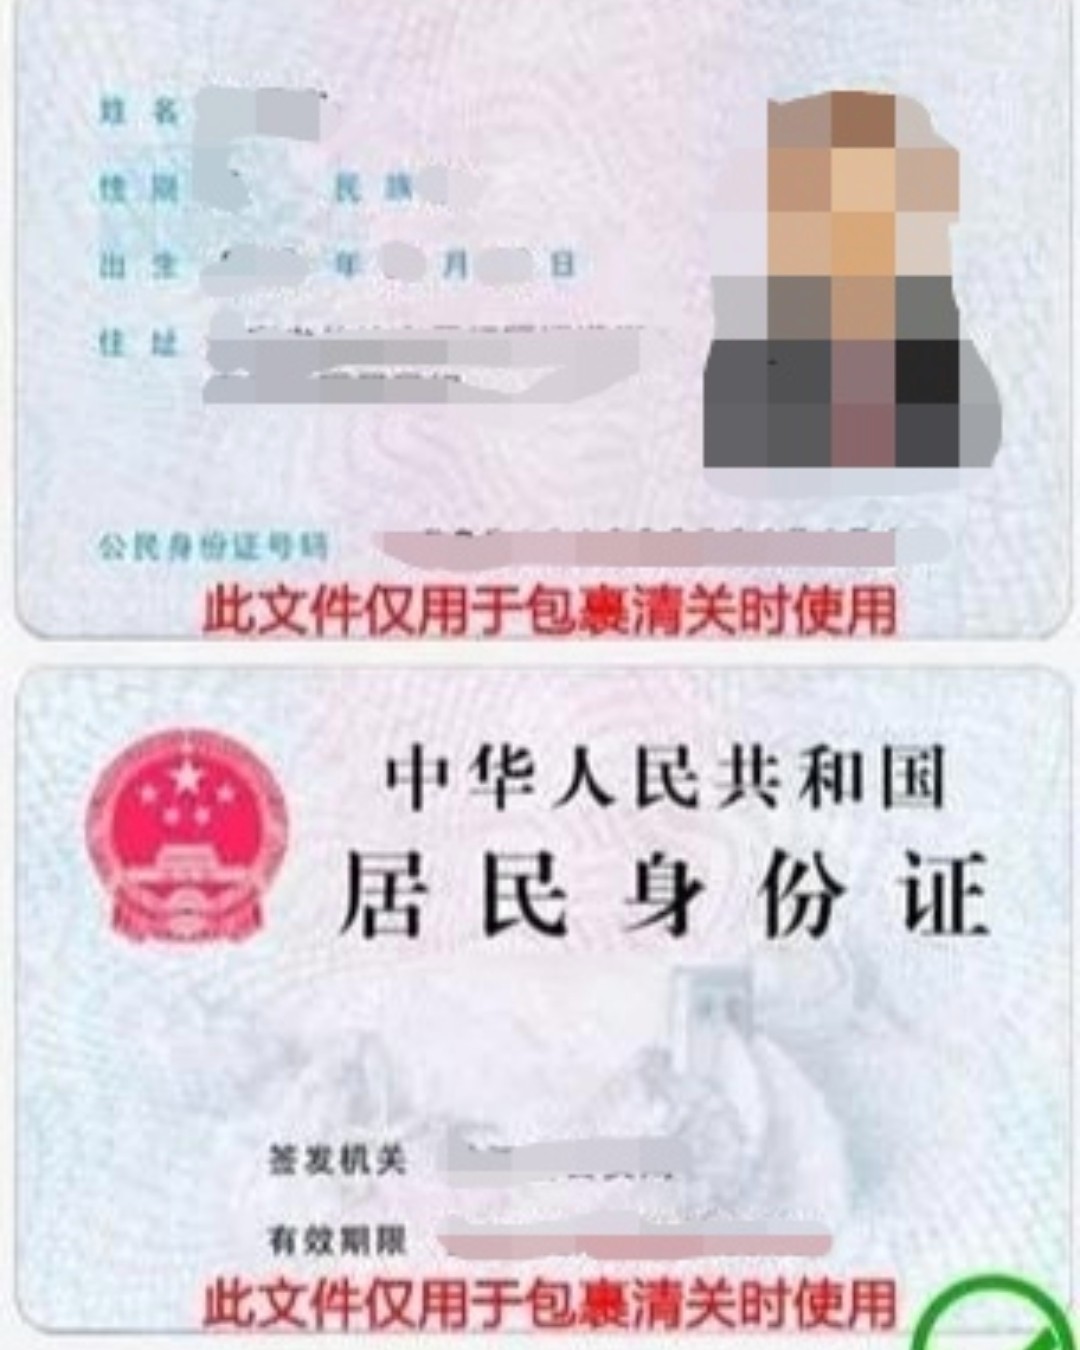 👀转运为什么要上传身份证？👀  📢答：根据中国海关规定